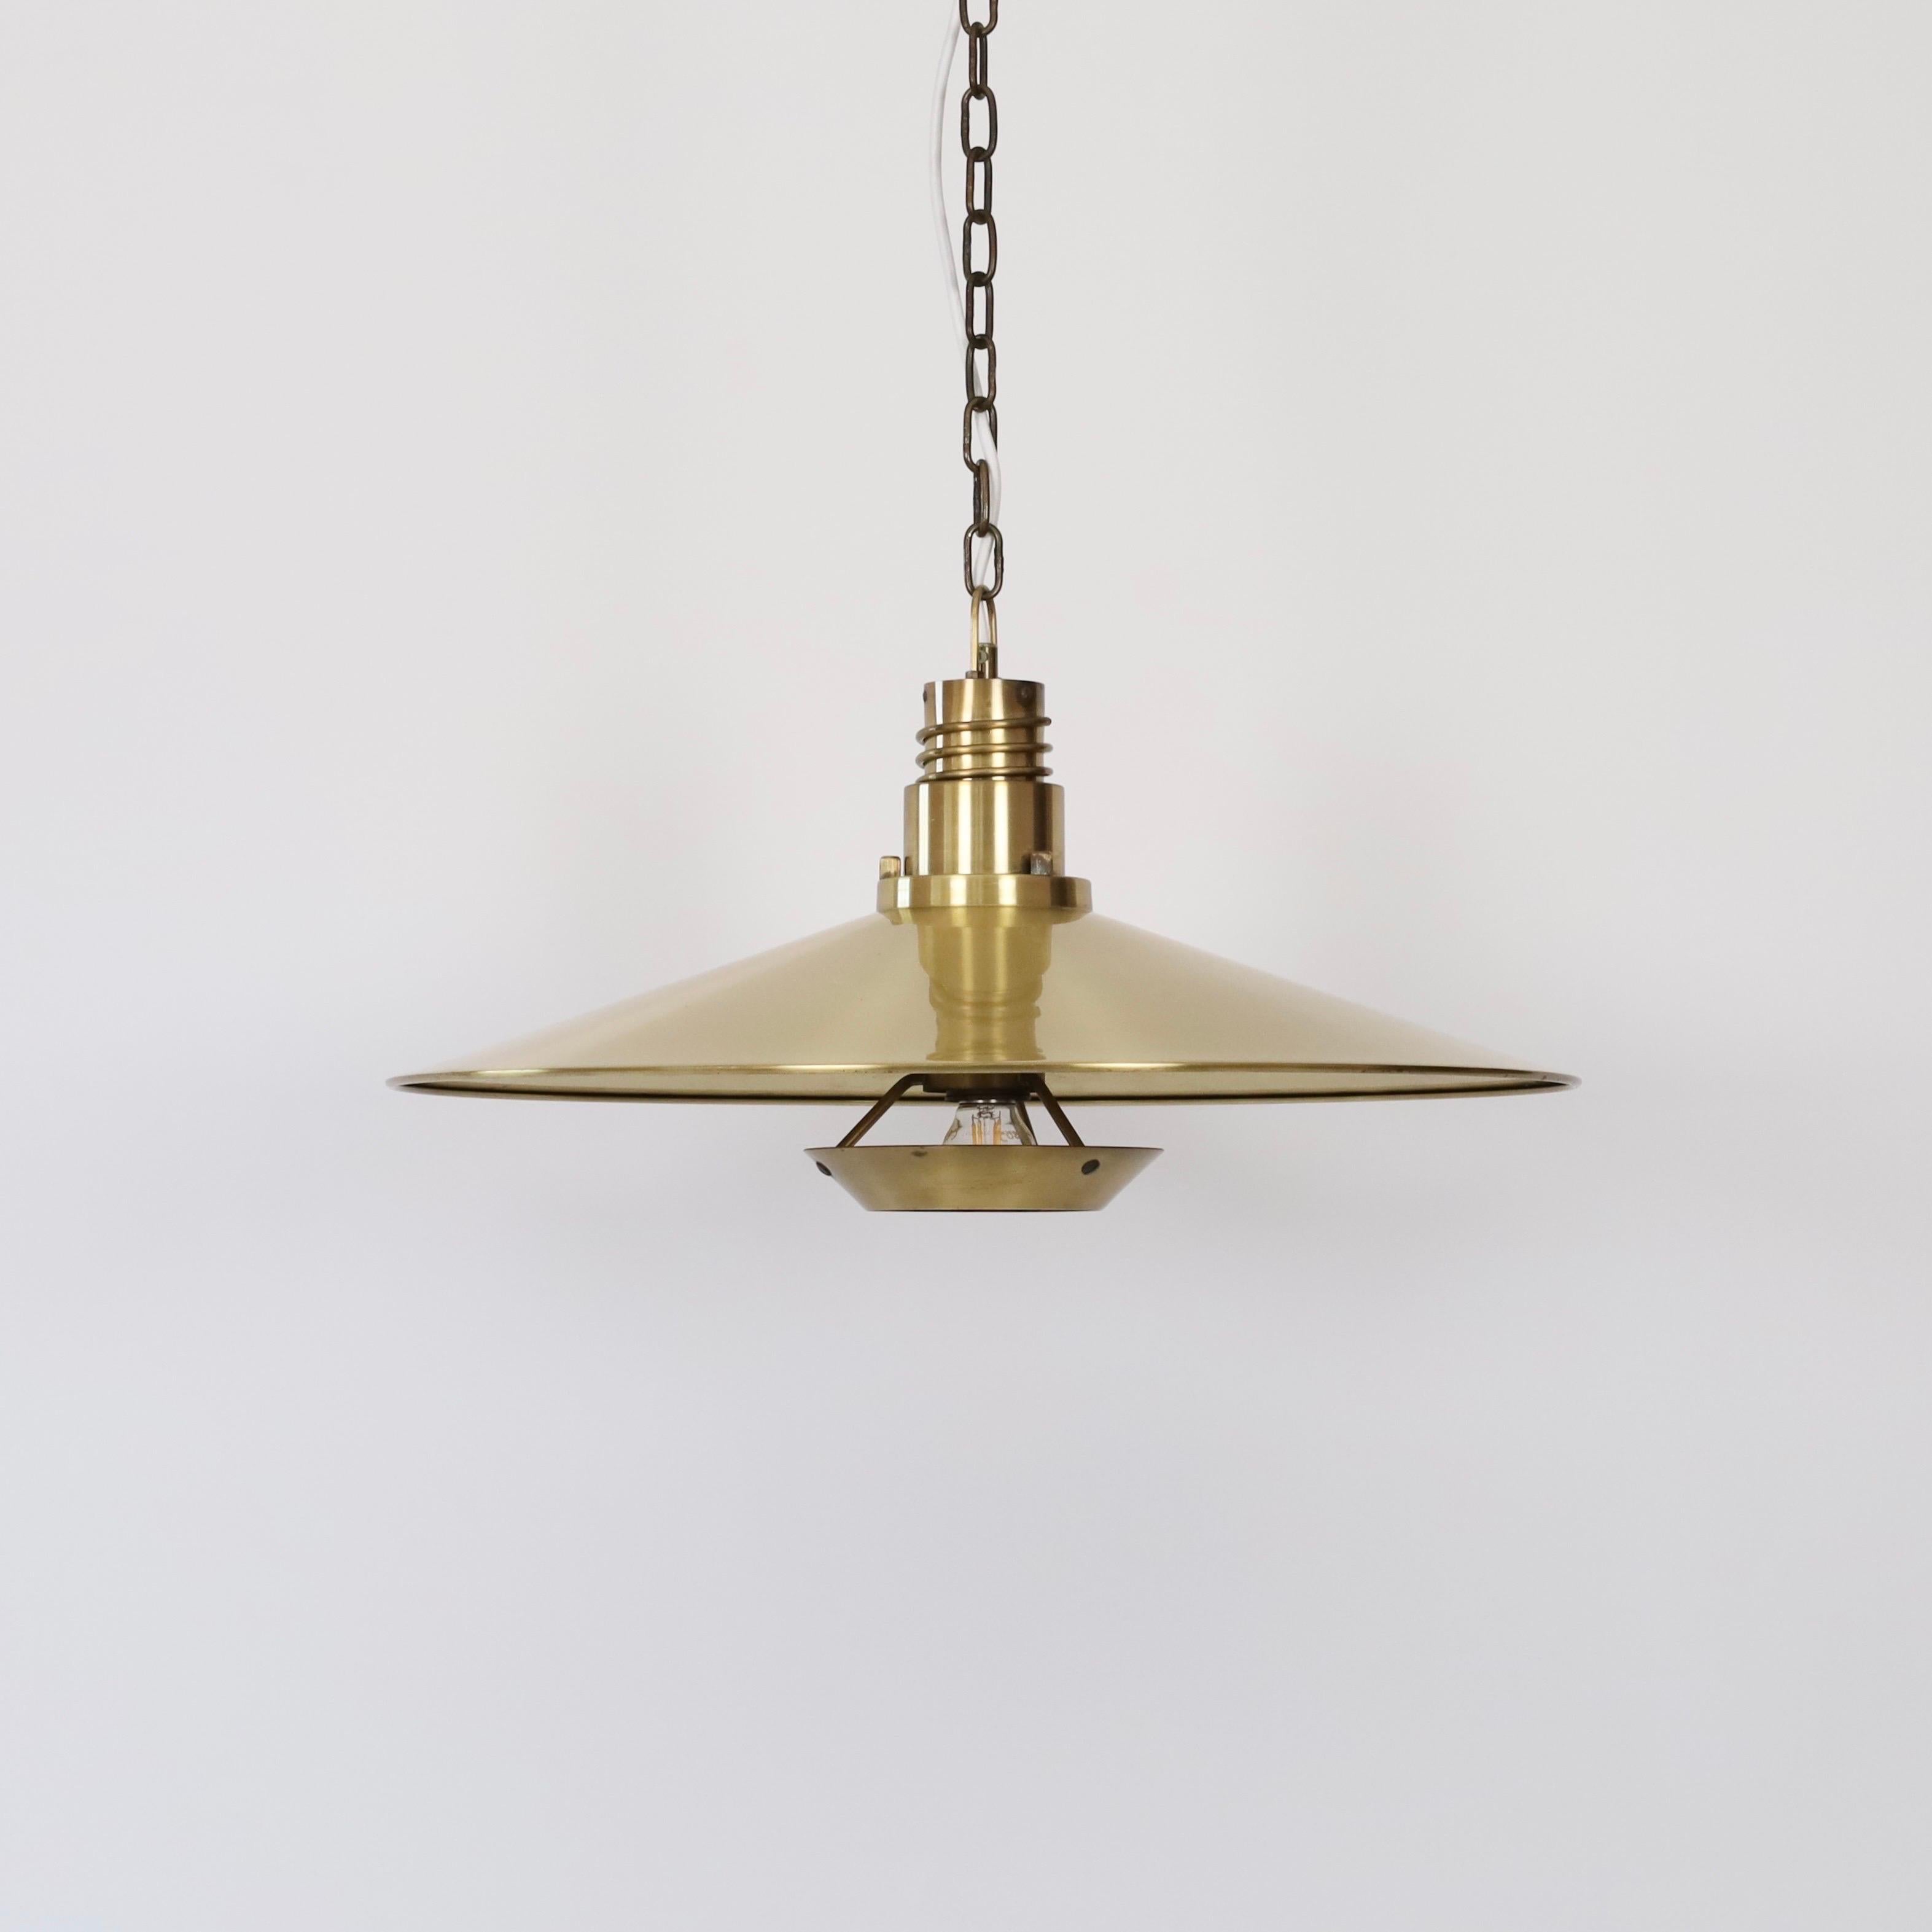 Suspension en laiton fabriquée par Fog & Mørup dans les années 1960. Important et impressionnant.

* Lampe suspendue en laiton avec positionnement ajustable de l'ampoule et de l'ampoule.
* Designer : Inconnu
* Producteur : Fog & Mørup Danemark
*